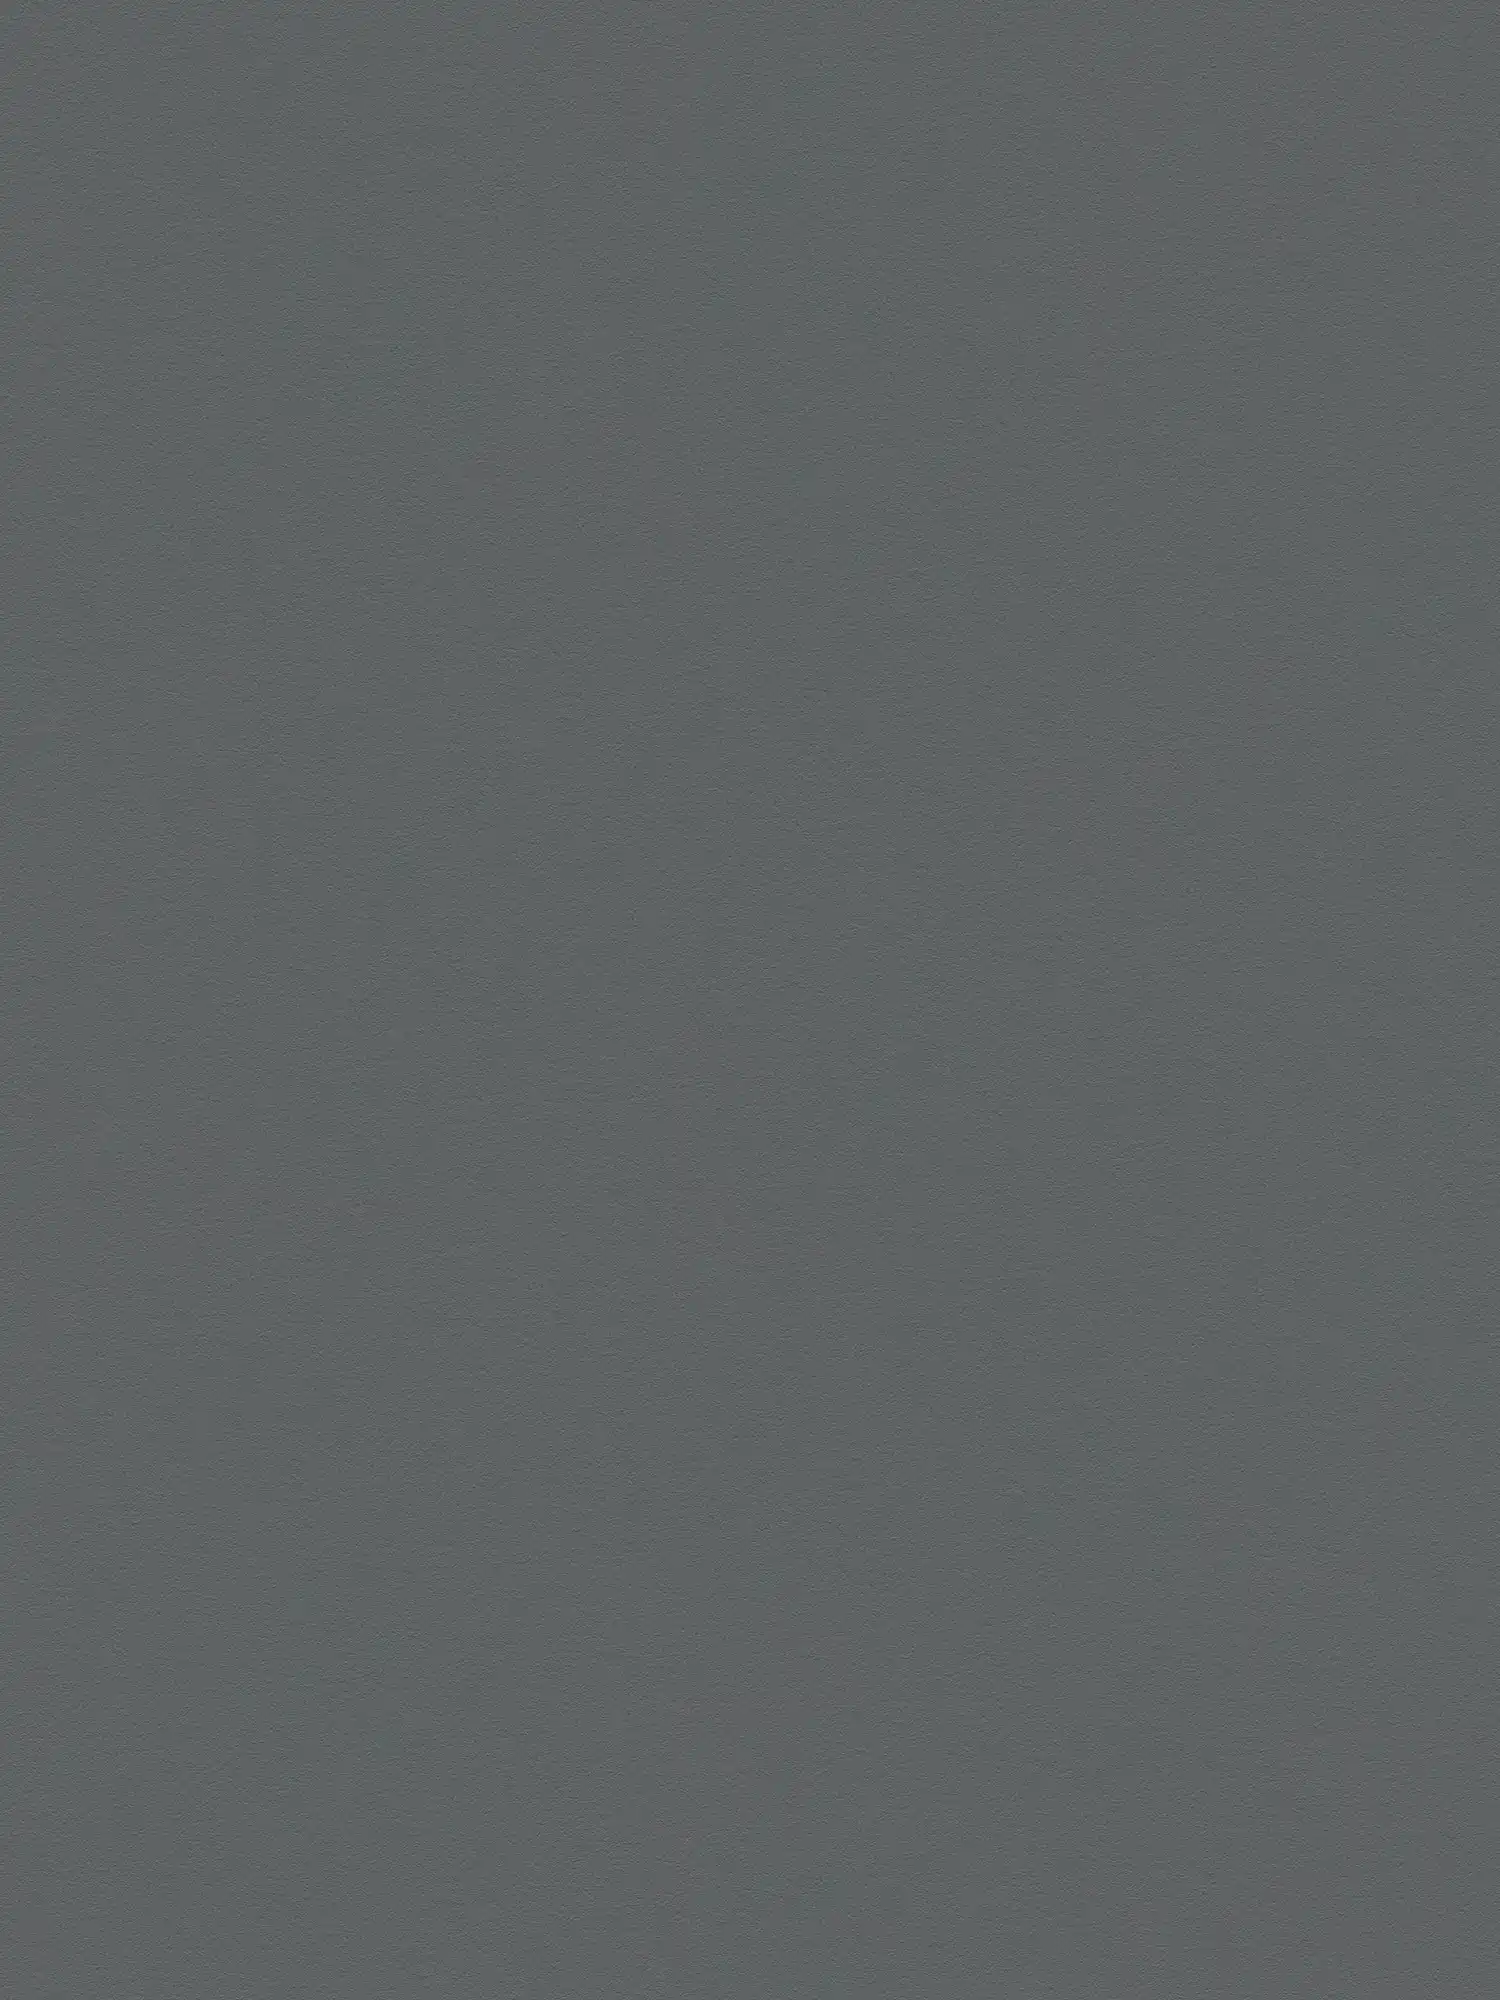 Plain wallpaper dark grey anthracite matt & textured
